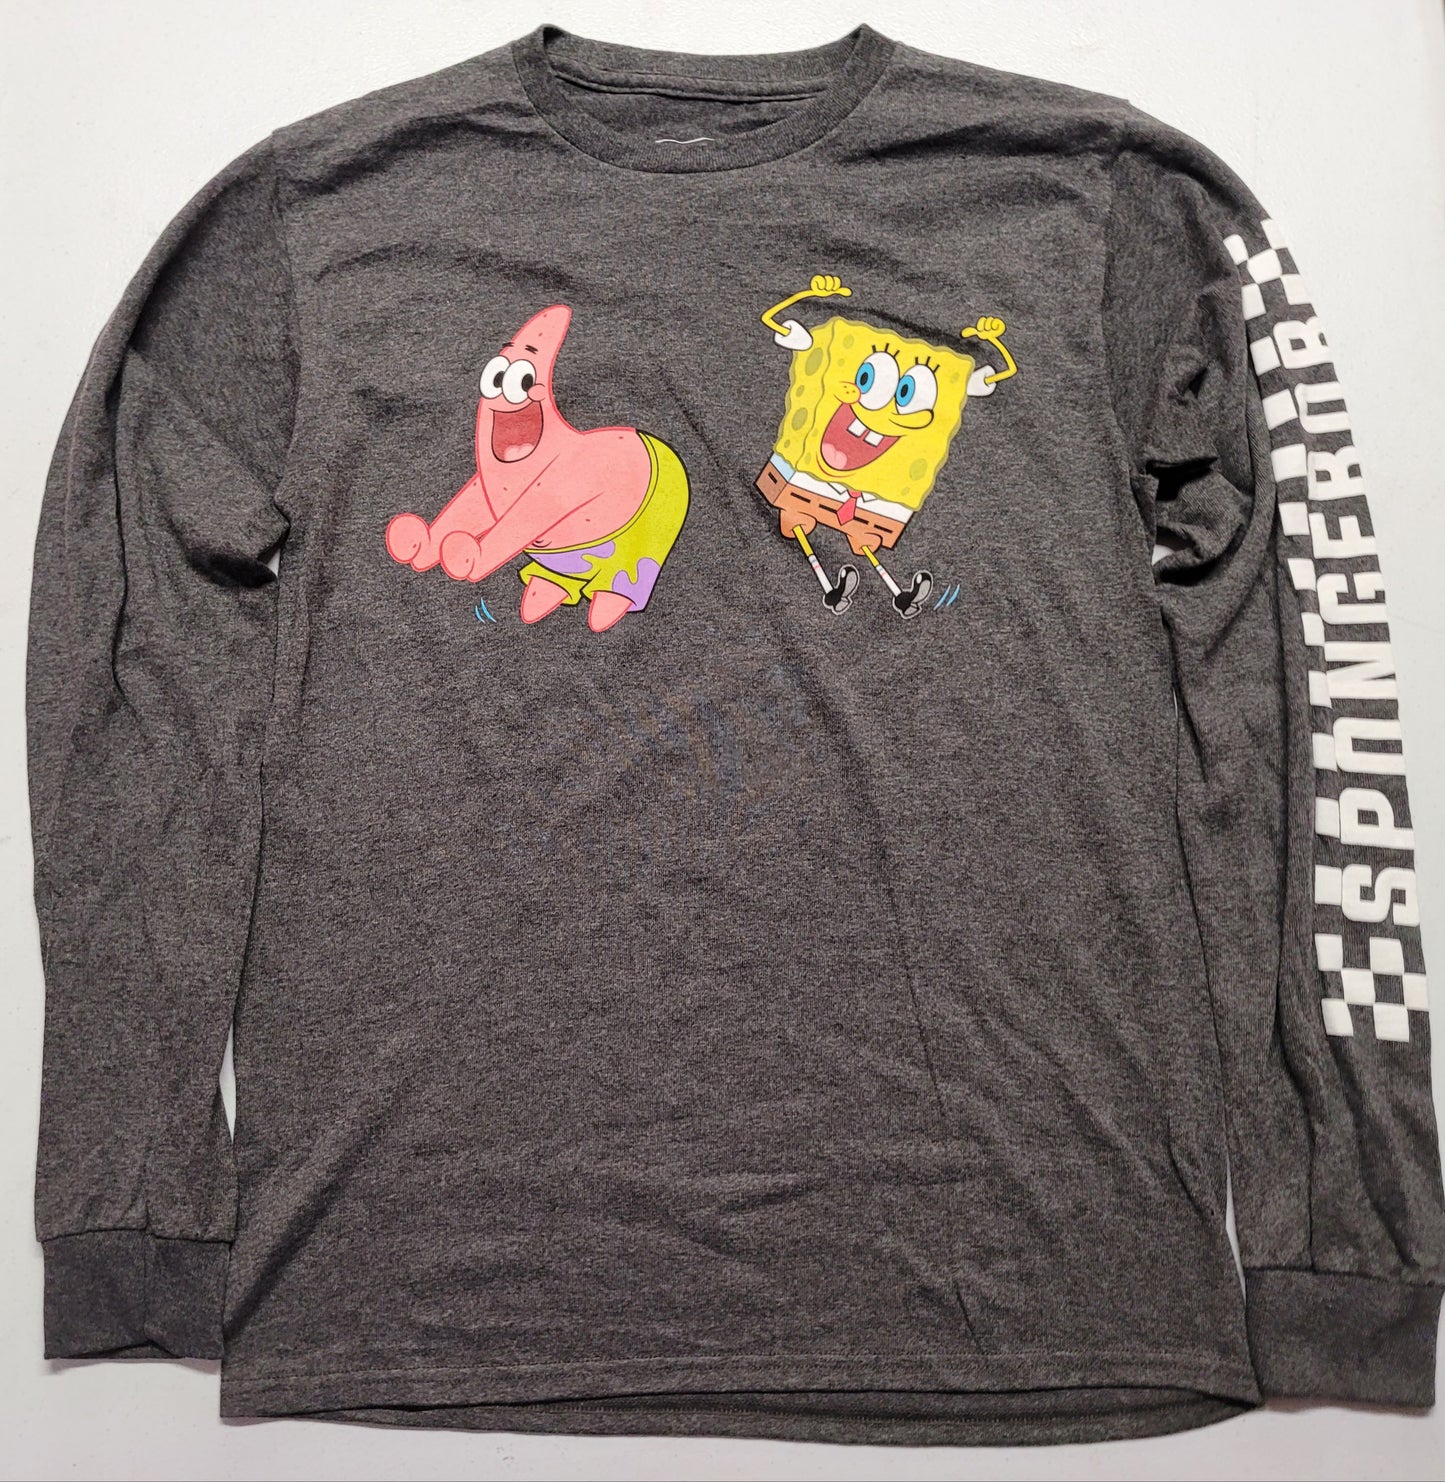 Spongebob Squarepants Nickelodeon Viacom Patrick Star Dancing Mens T-Shirt